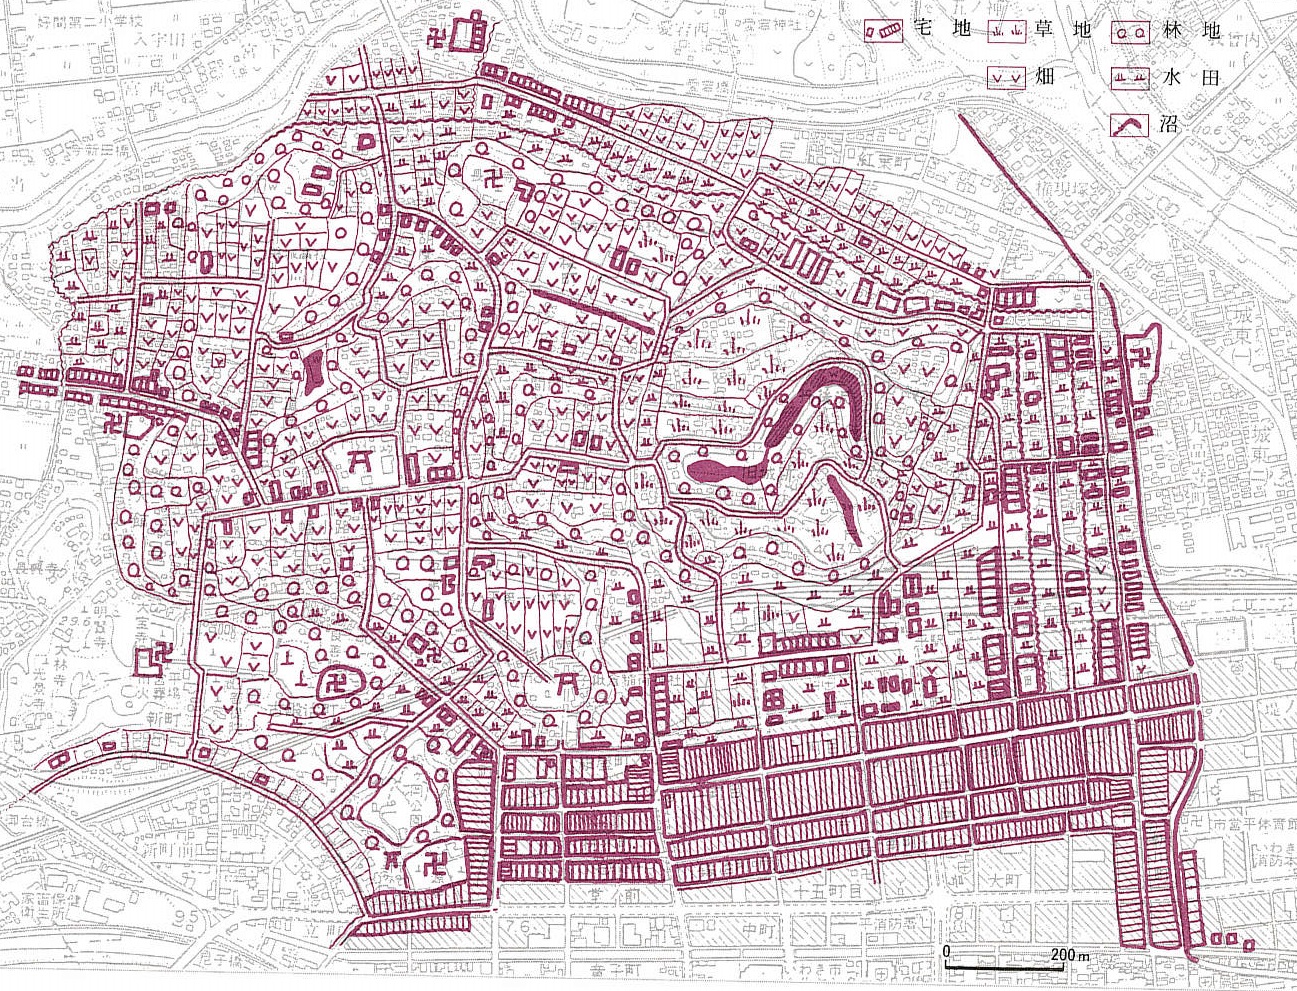 地図1　平市街(北目村)の地籍図・土地利用図(明治18年、『福島の歴史地理研究』から引用)